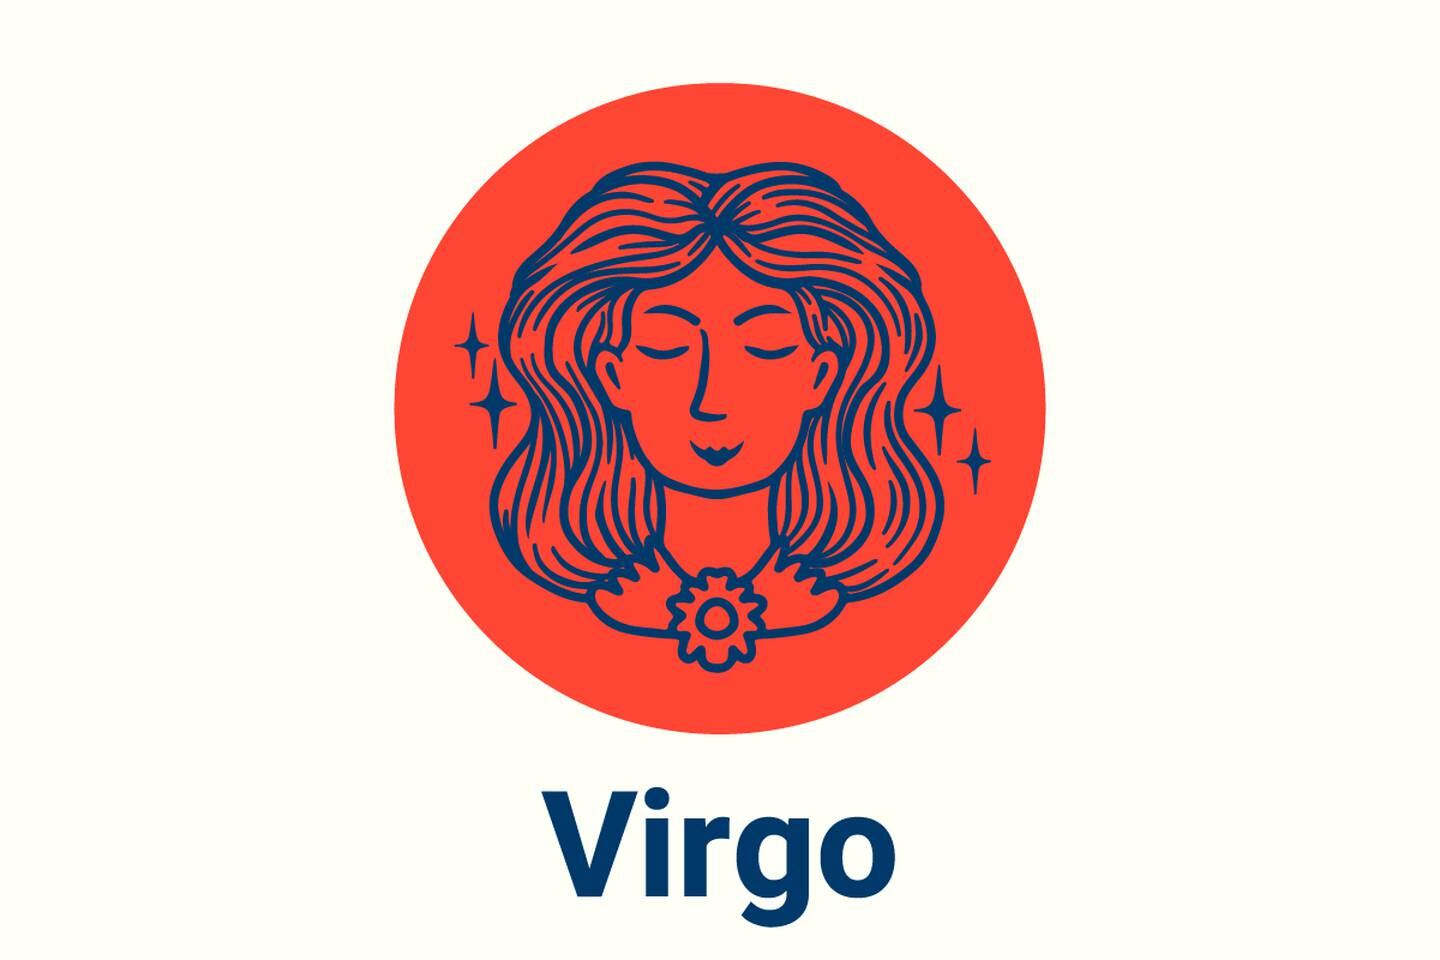 Imagen con el símbolo de Virgo.